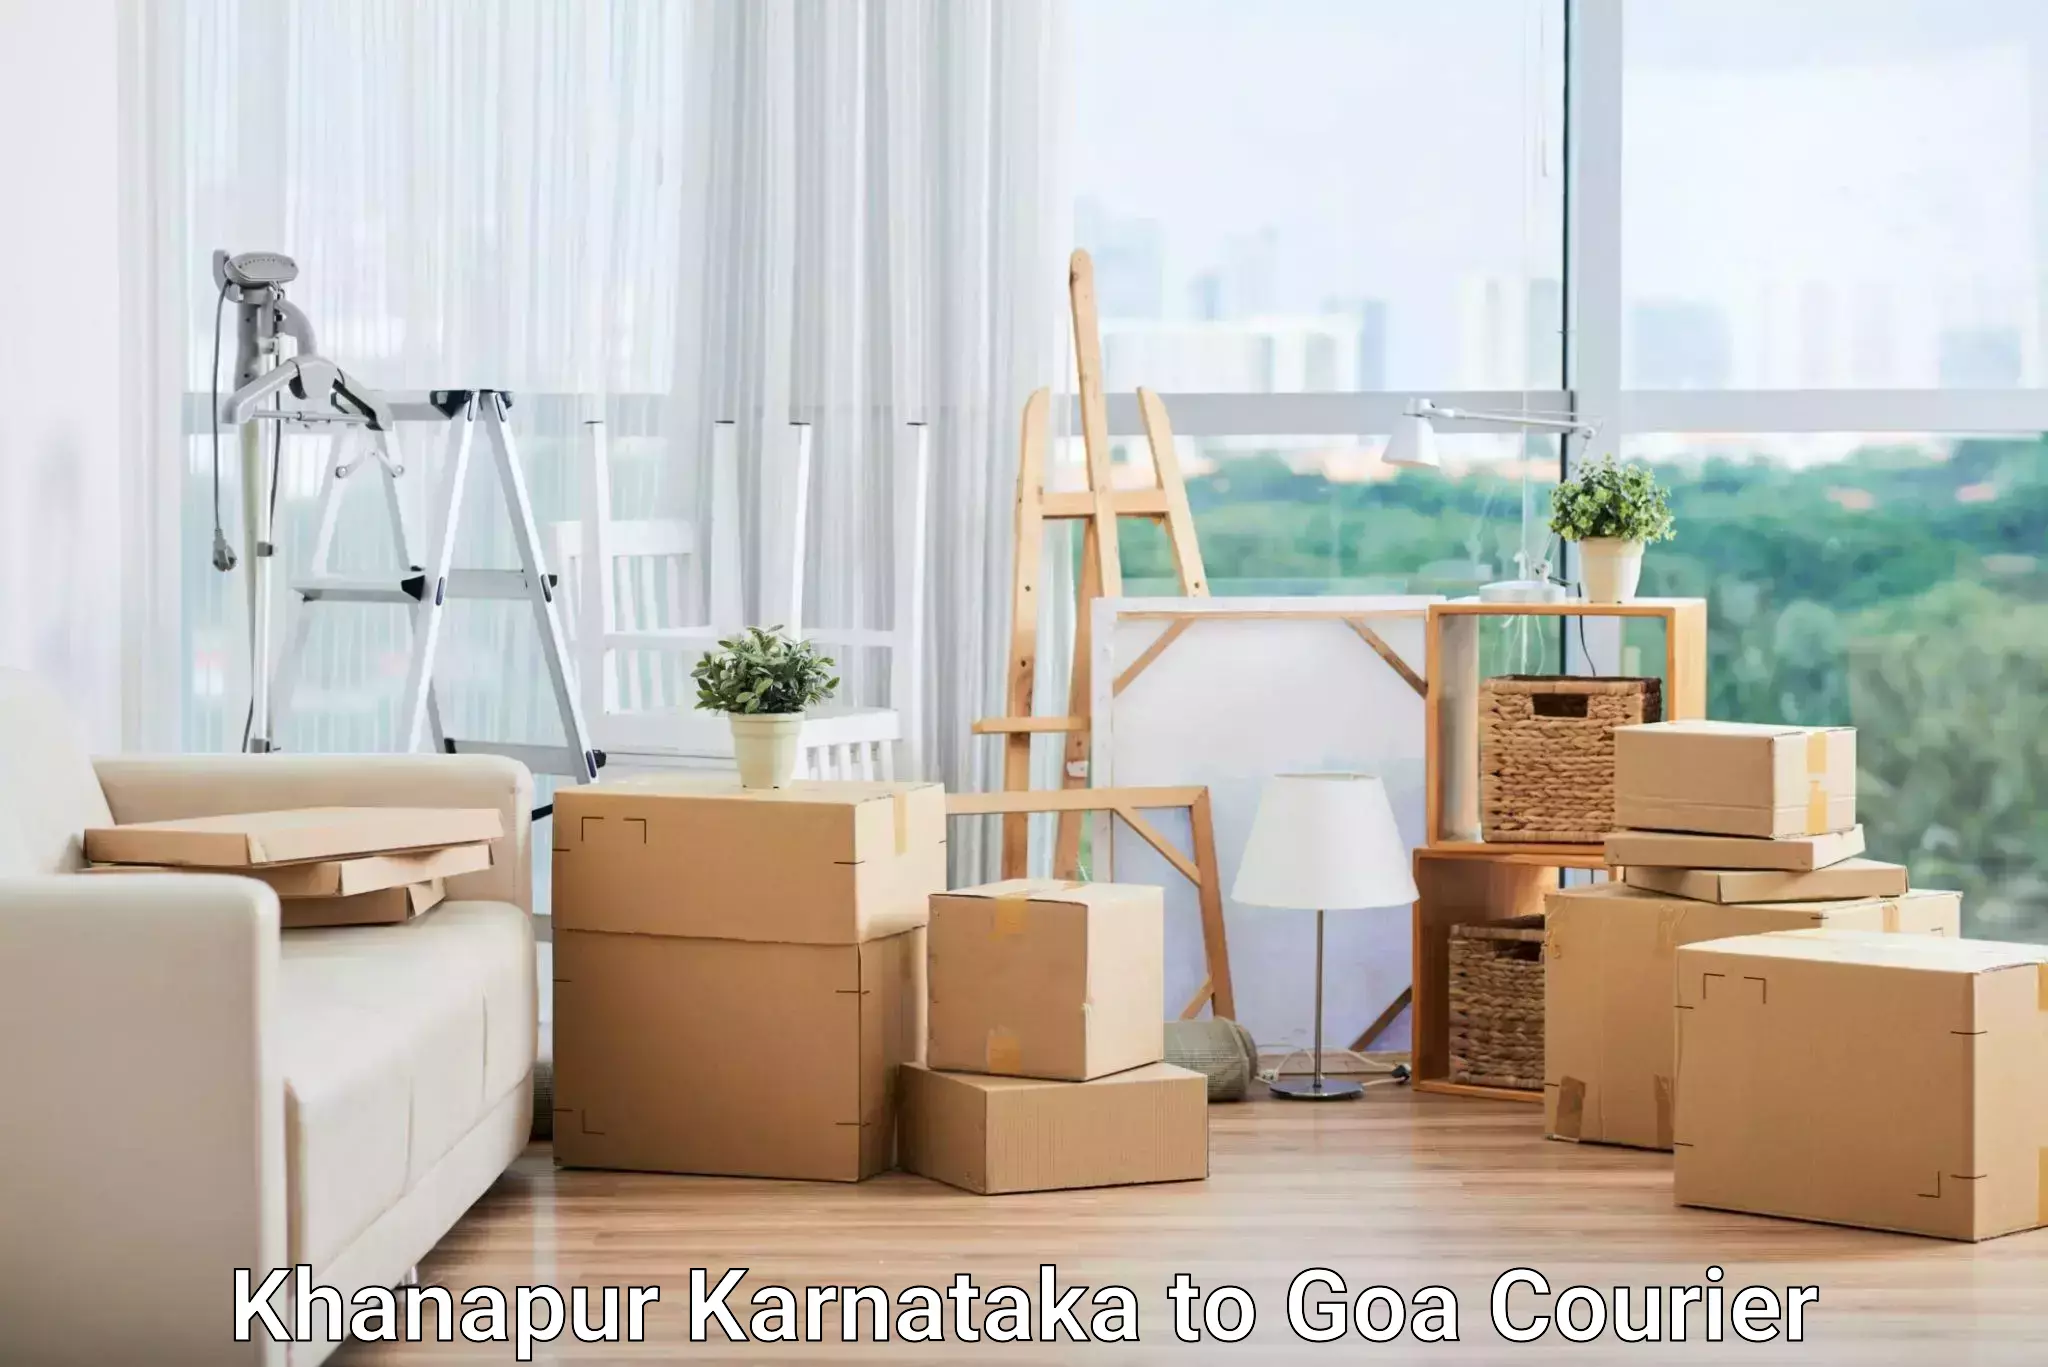 Efficient parcel service Khanapur Karnataka to Panaji